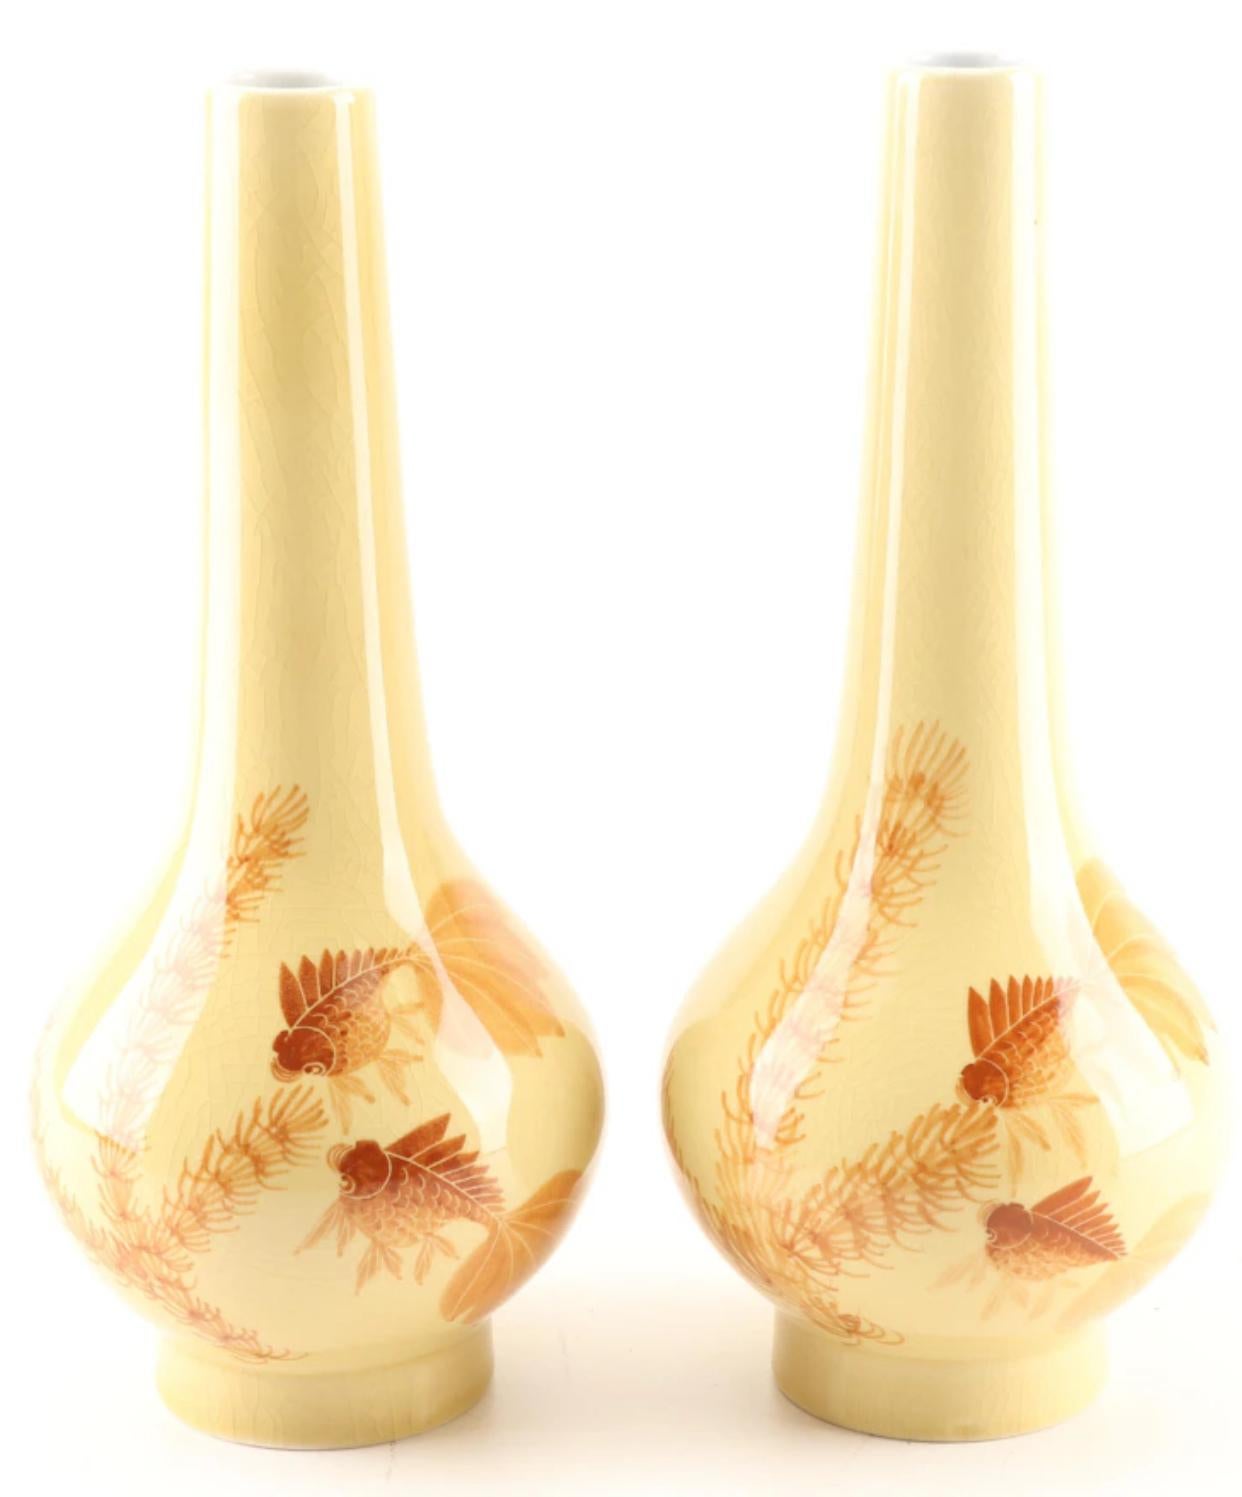 Paar buttergelbe, handbemalte chinesische Vasen in Kürbisform. Die Vorderseite und die Rückseite sind mit orangefarbenen Goldfischpaaren und einer Wasserflora bemalt. Die Böden sind mit chinesischen Schriftzeichen verziert, die den